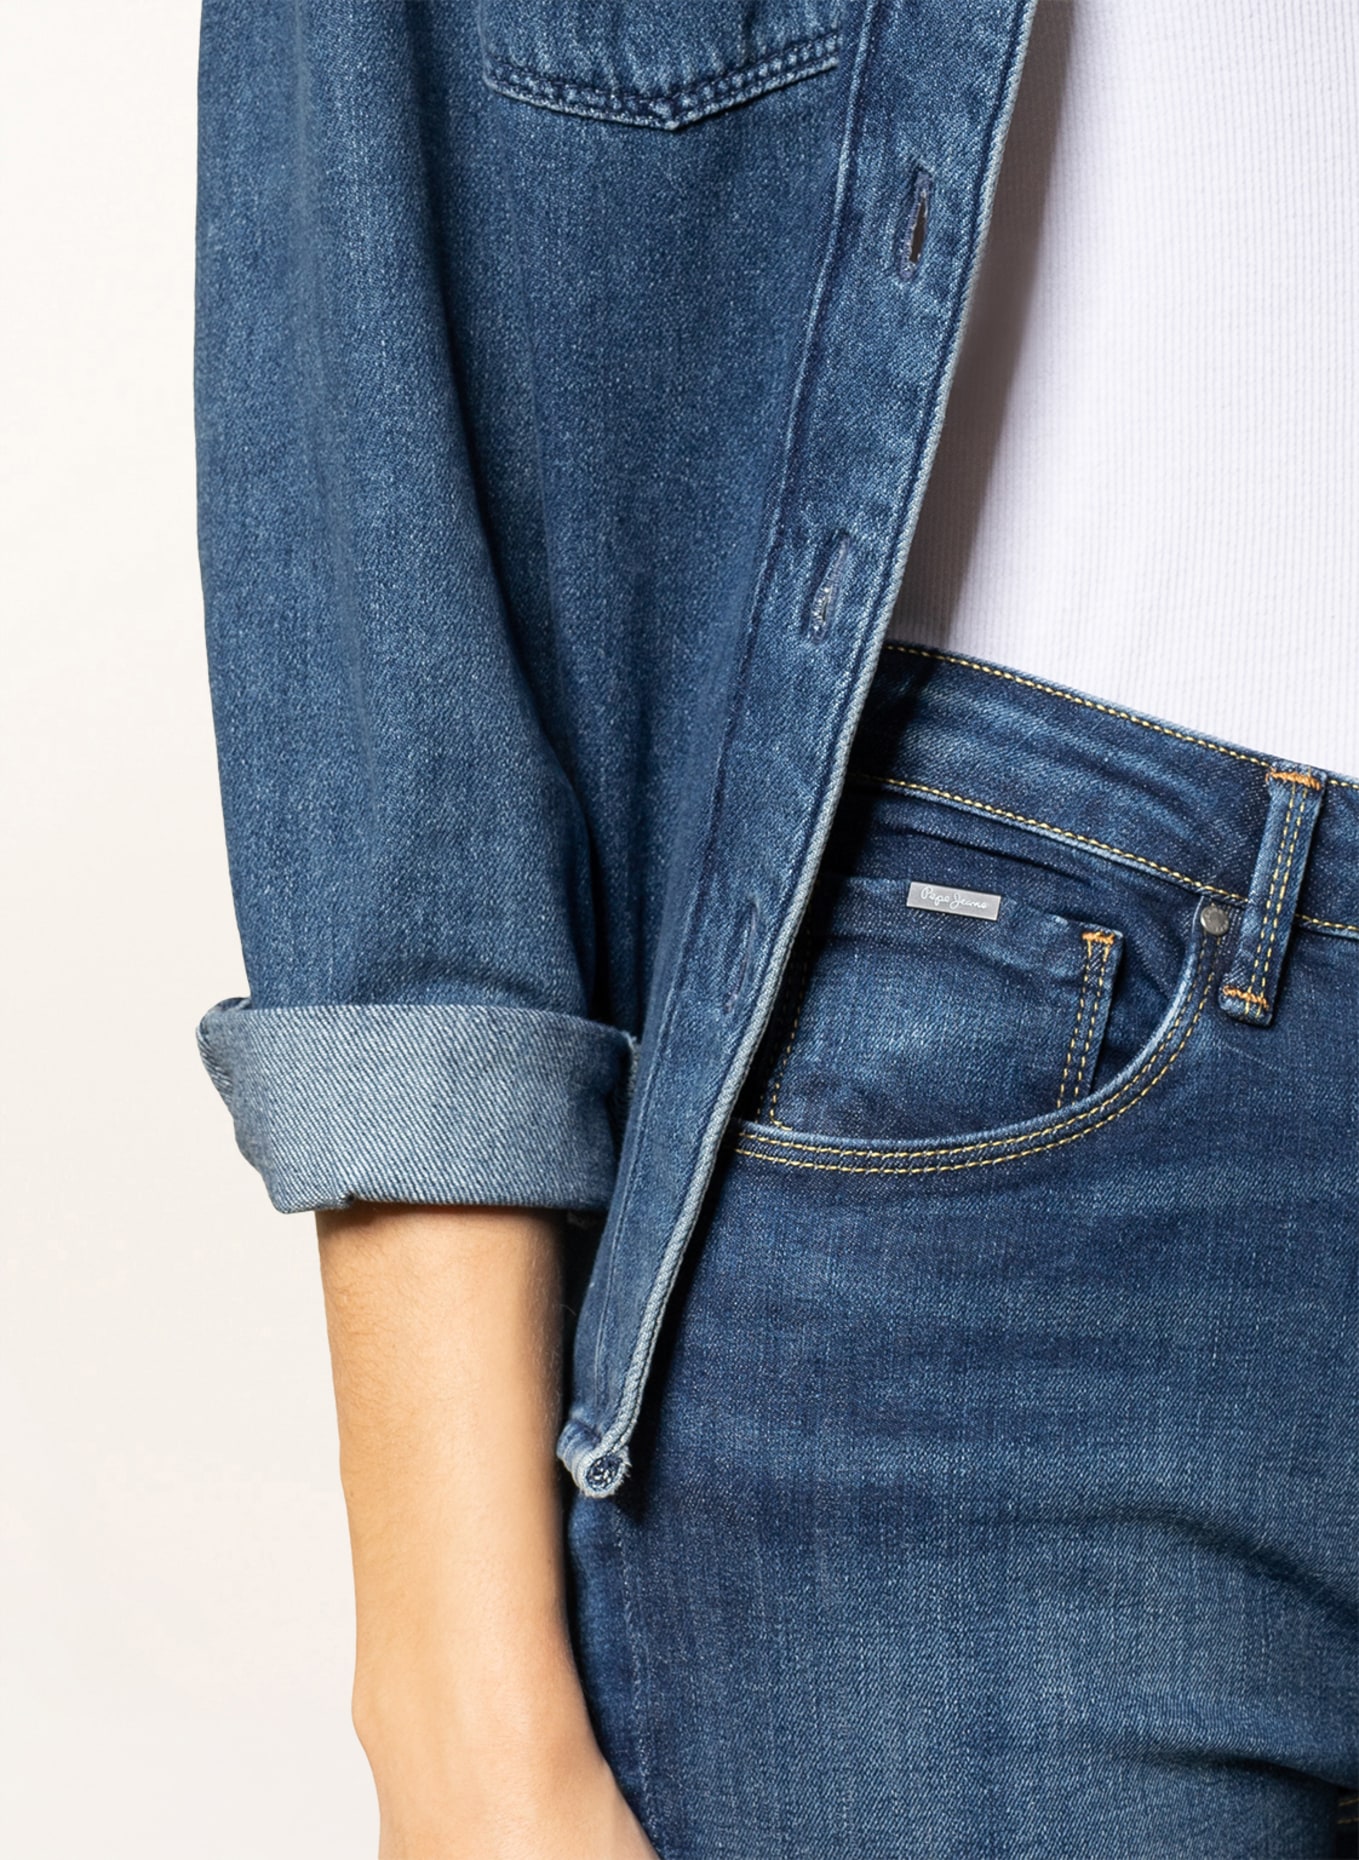 Pepe Jeans Skinny jeans REGENT, Color: VW3 Medium DK Wiser (Image 5)